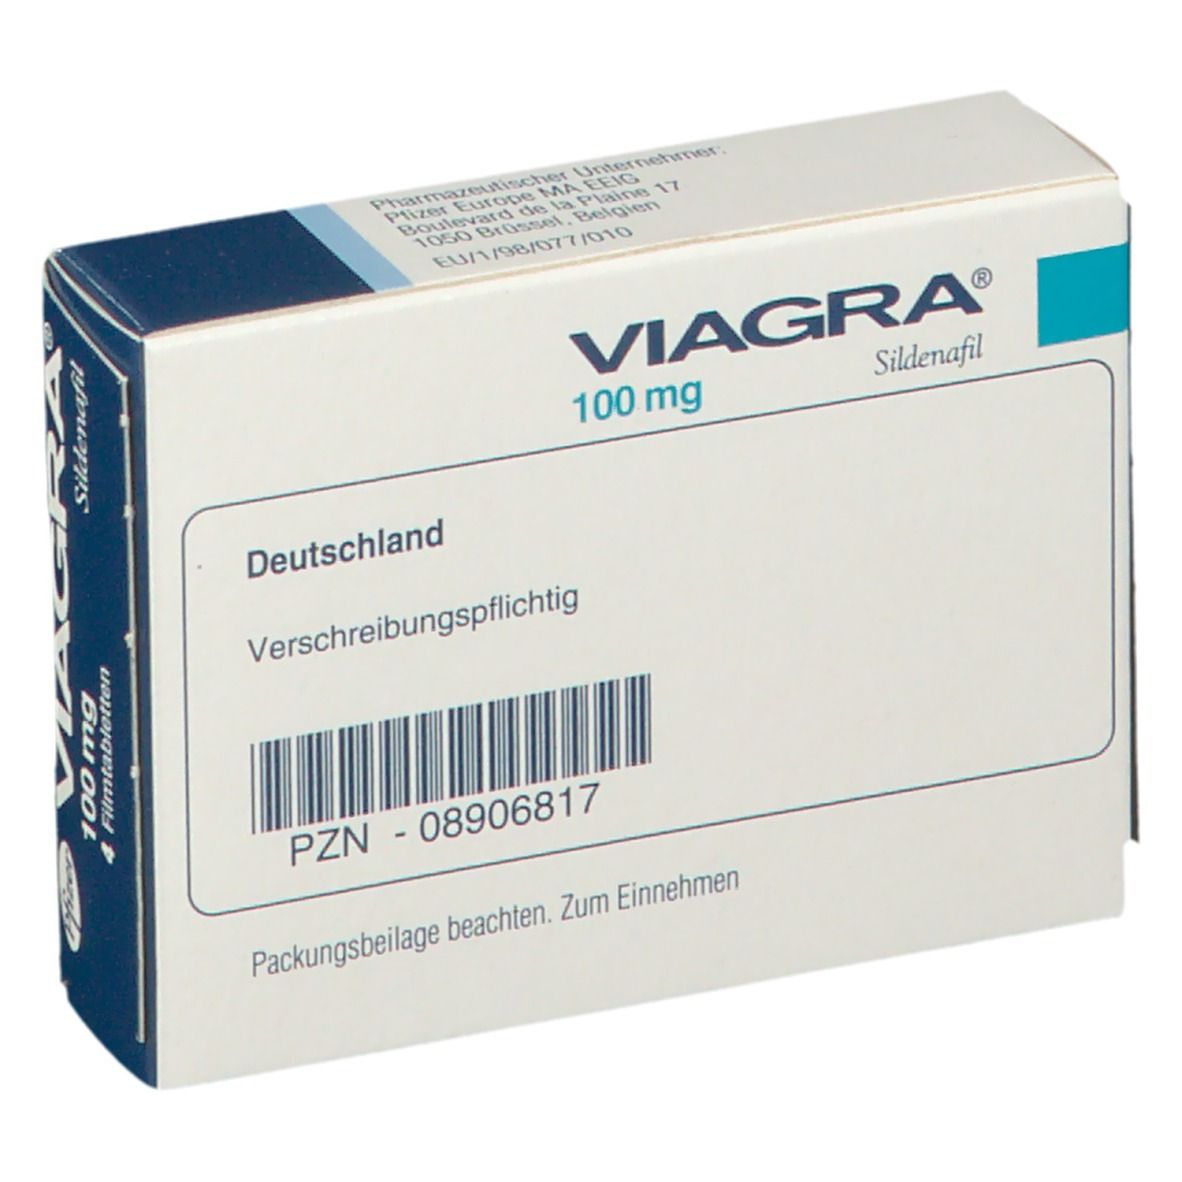 Das Geschäft mit Viagra